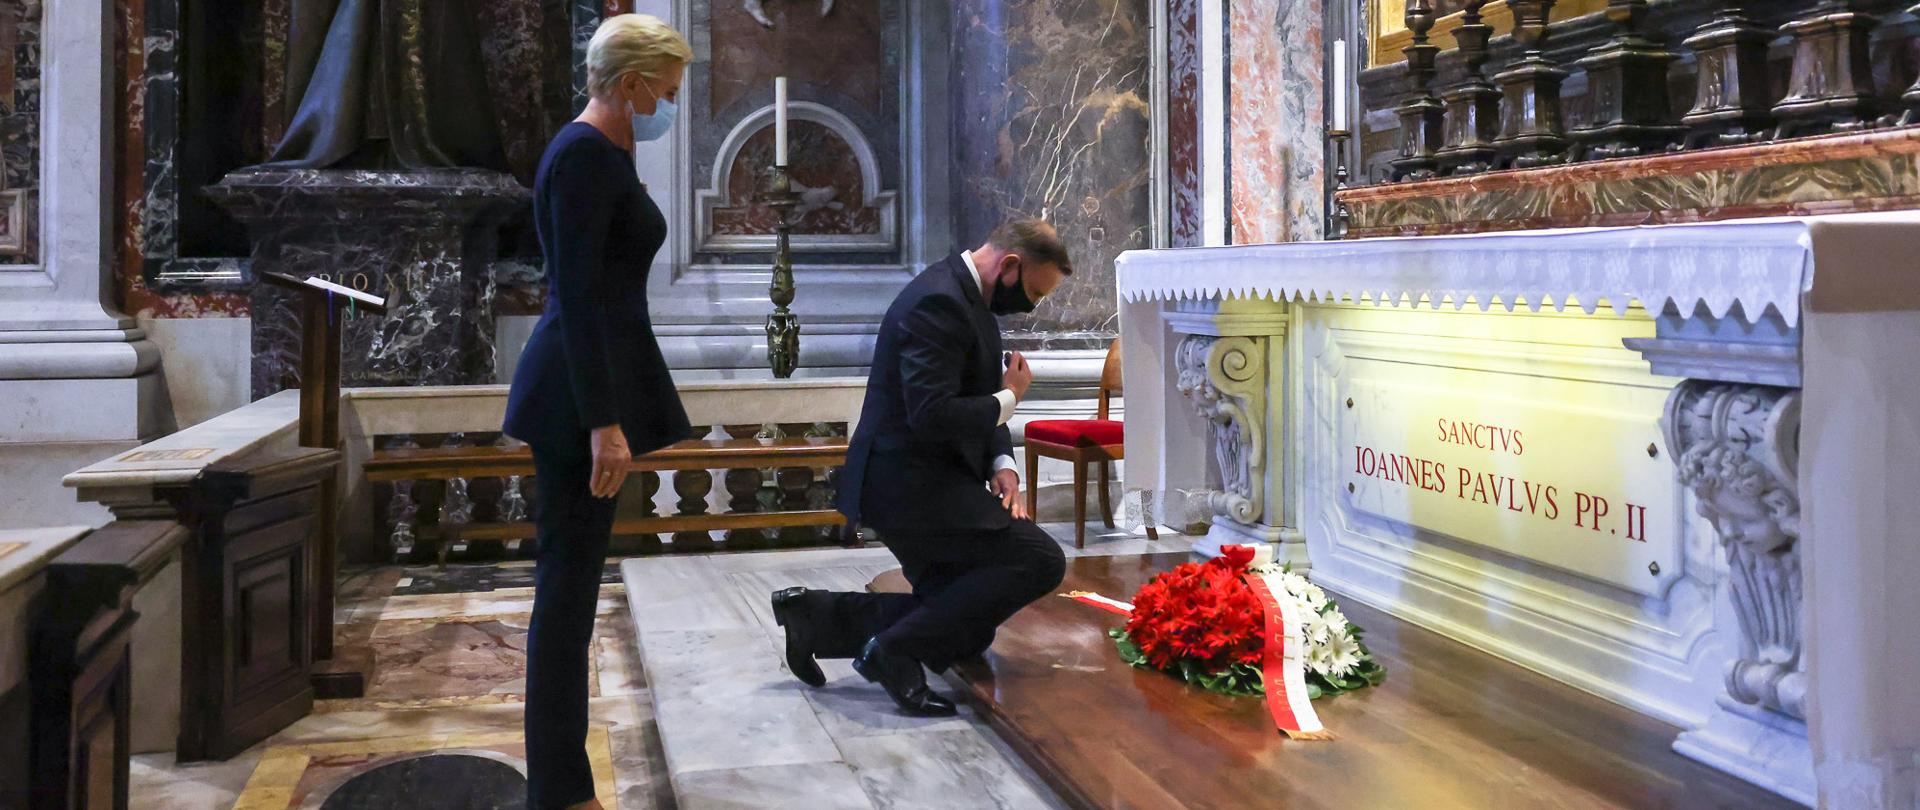 Presidente di Polonia Andrzej Duda e la Consorte nella Basilica di San Pietro